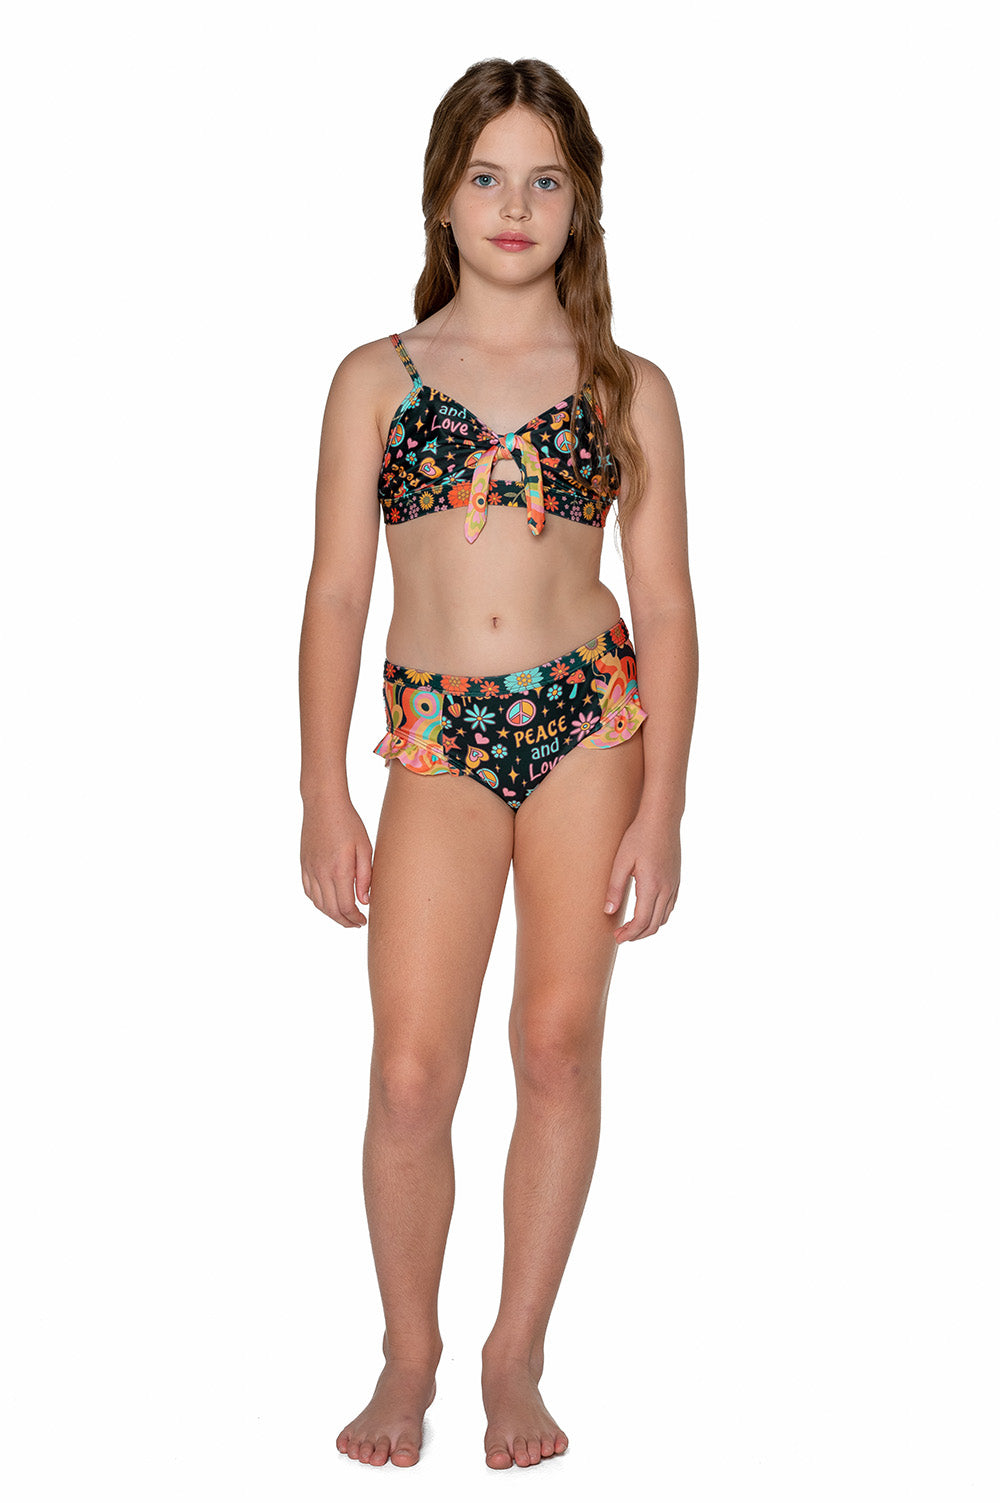 Teen Girls Swimwear (12-14 years) – Olga Valentine Swimwear